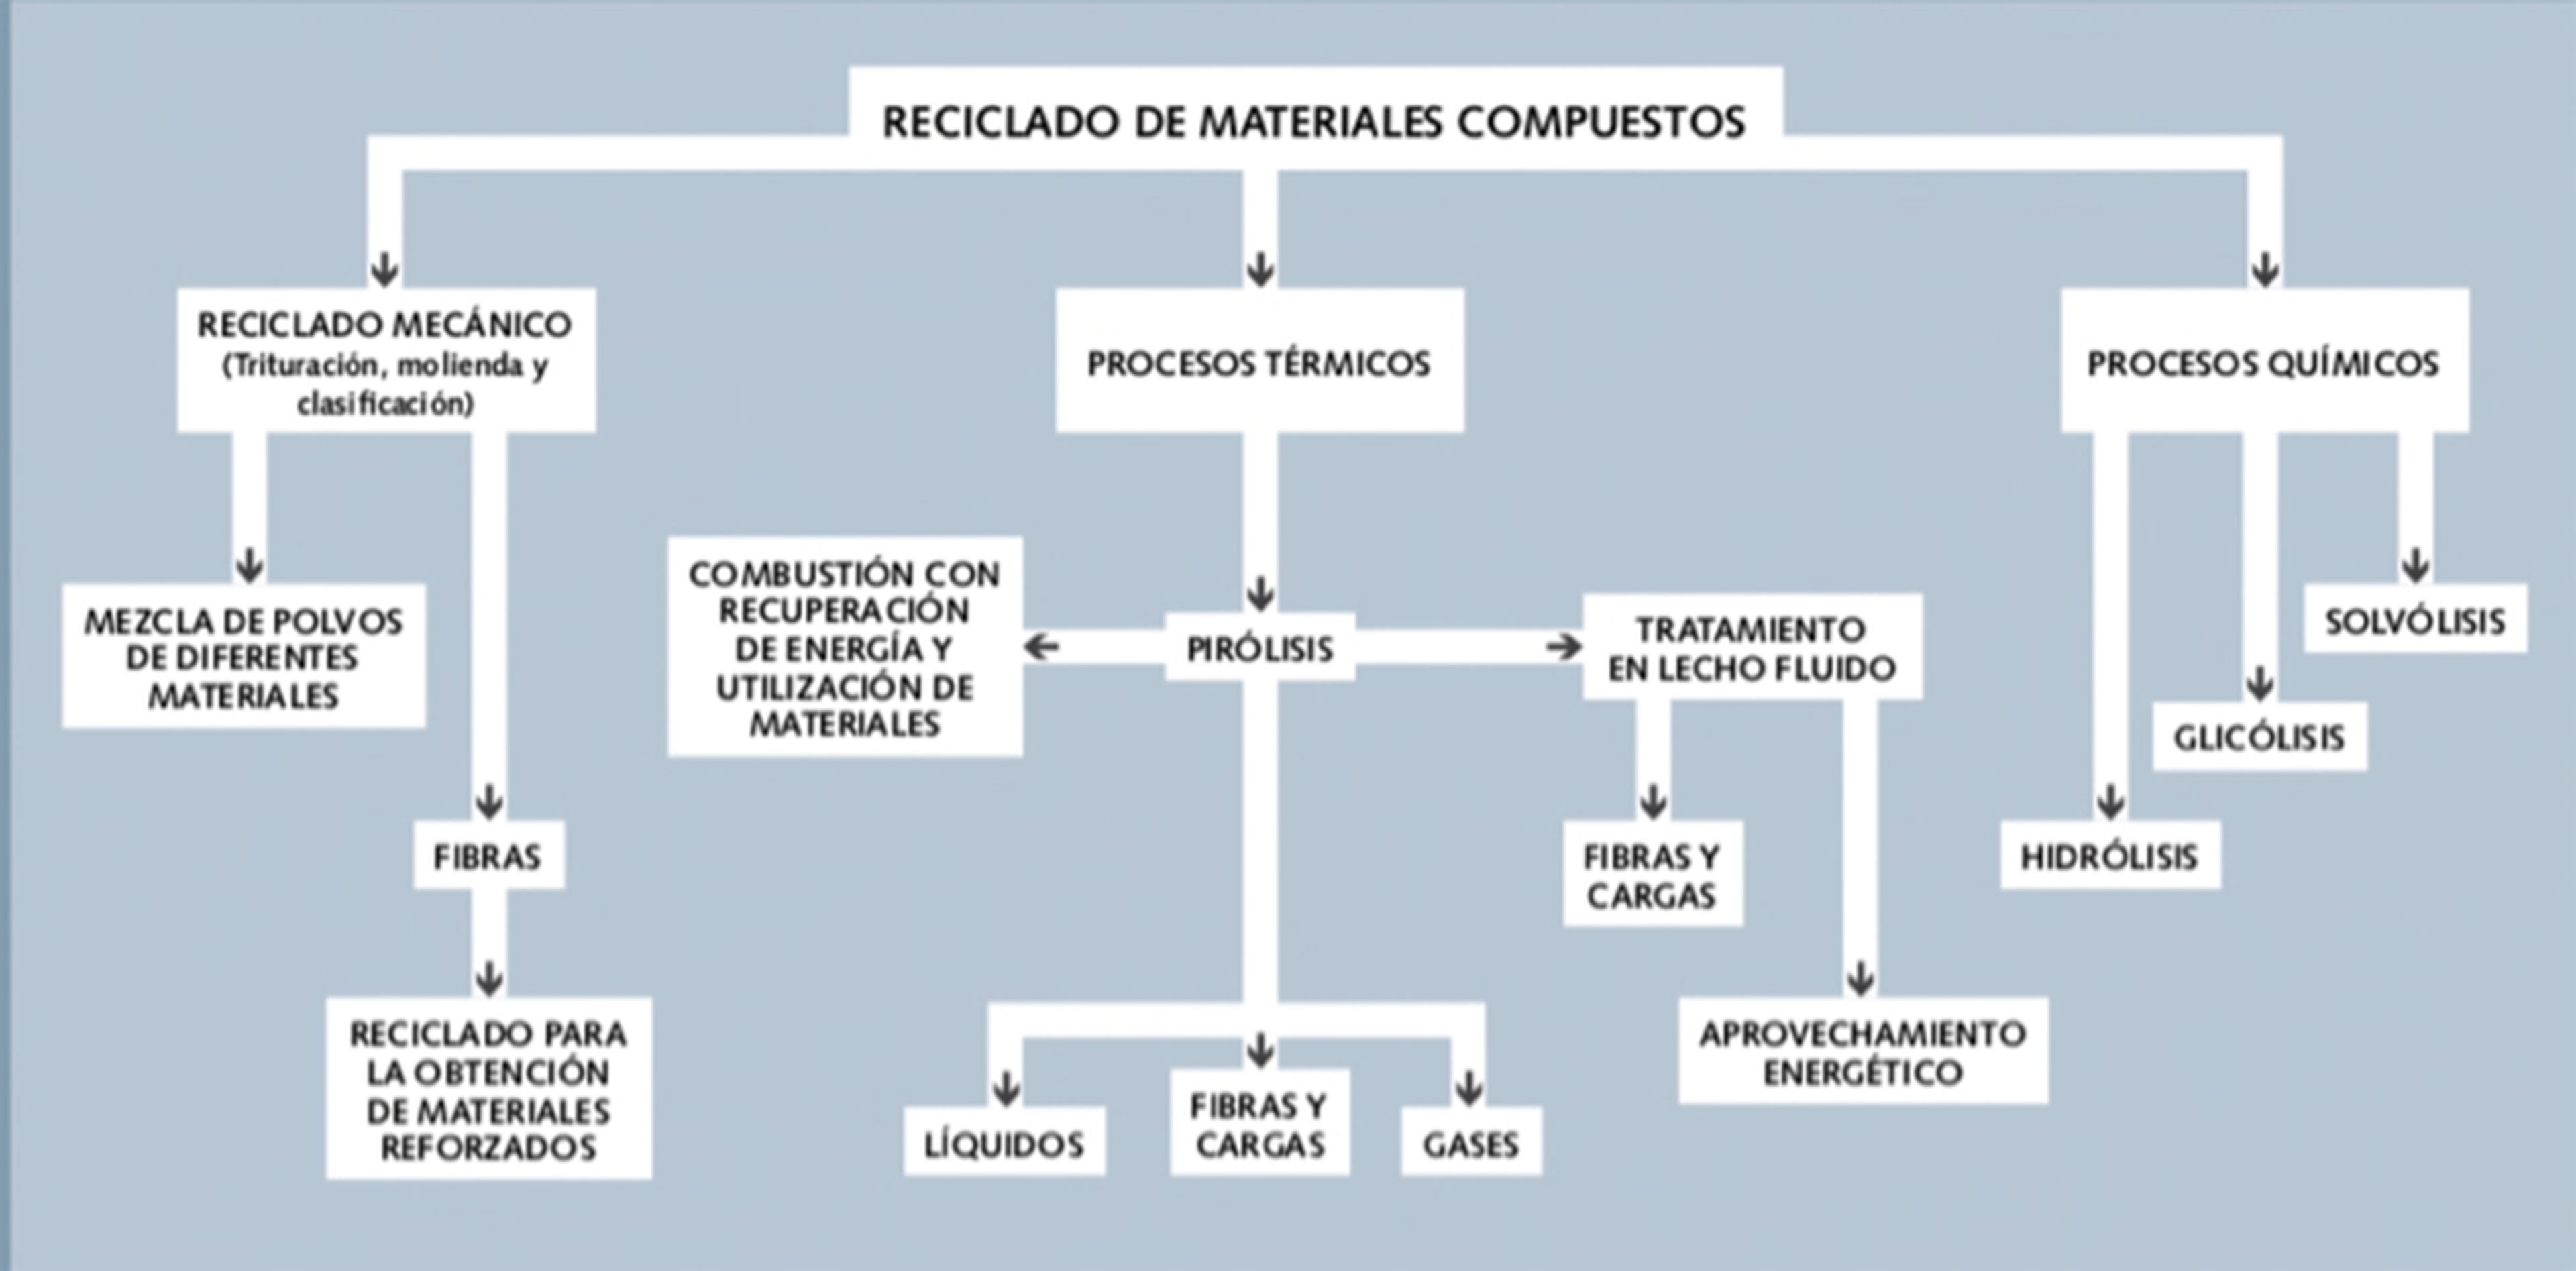 Tipos de reciclado empleados para el tratamiento de materiales compuestos. Por Félix Antonio López.